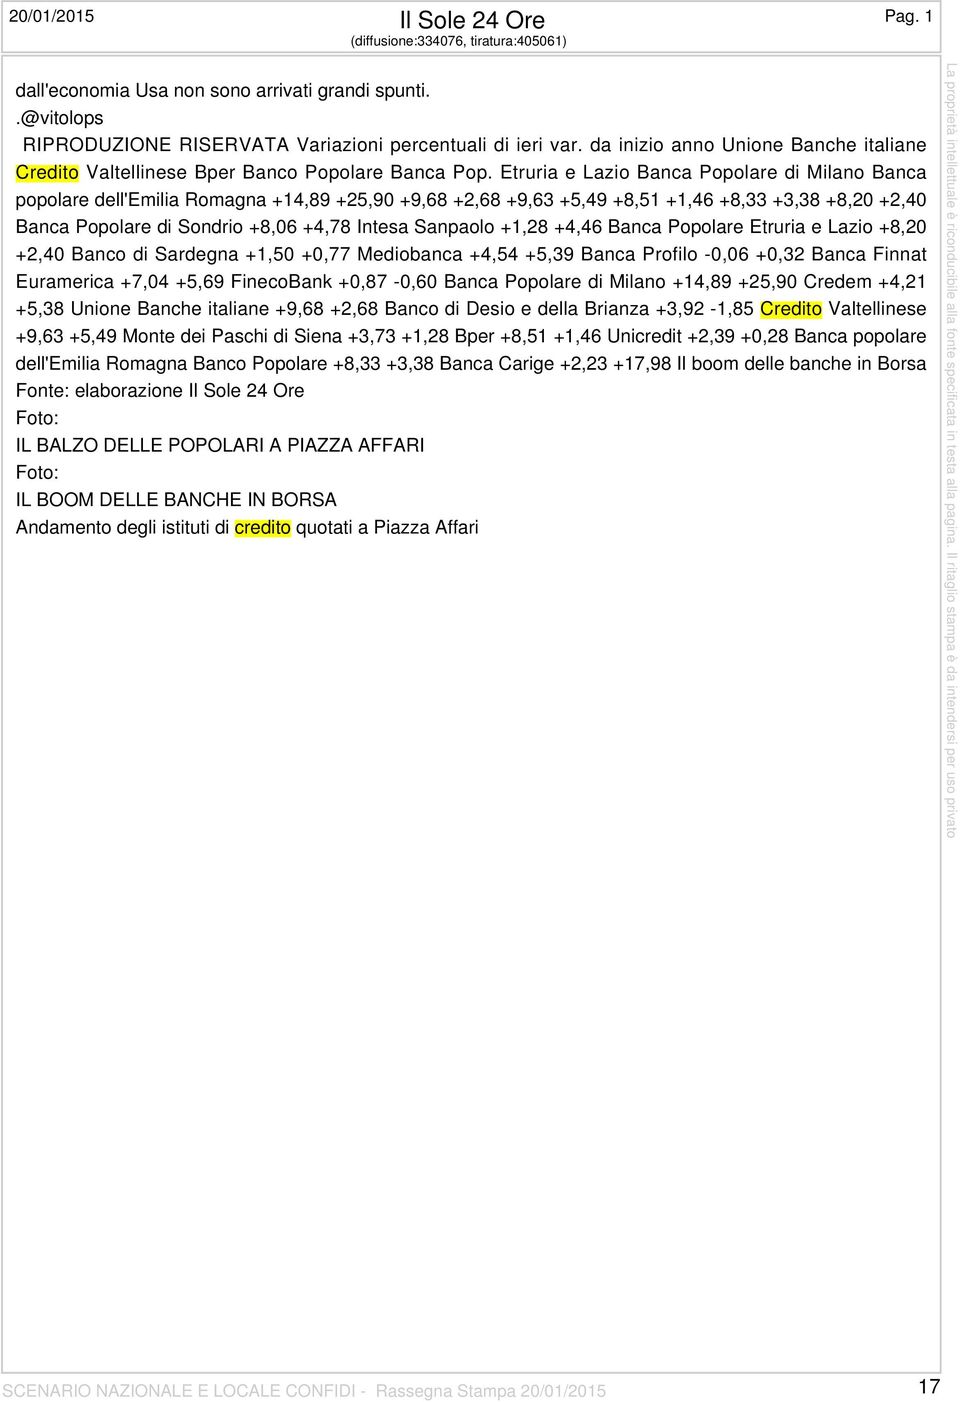 Etruria e Lazio Banca Popolare di Milano Banca popolare dell'emilia Romagna +14,89 +25,90 +9,68 +2,68 +9,63 +5,49 +8,51 +1,46 +8,33 +3,38 +8,20 +2,40 Banca Popolare di Sondrio +8,06 +4,78 Intesa